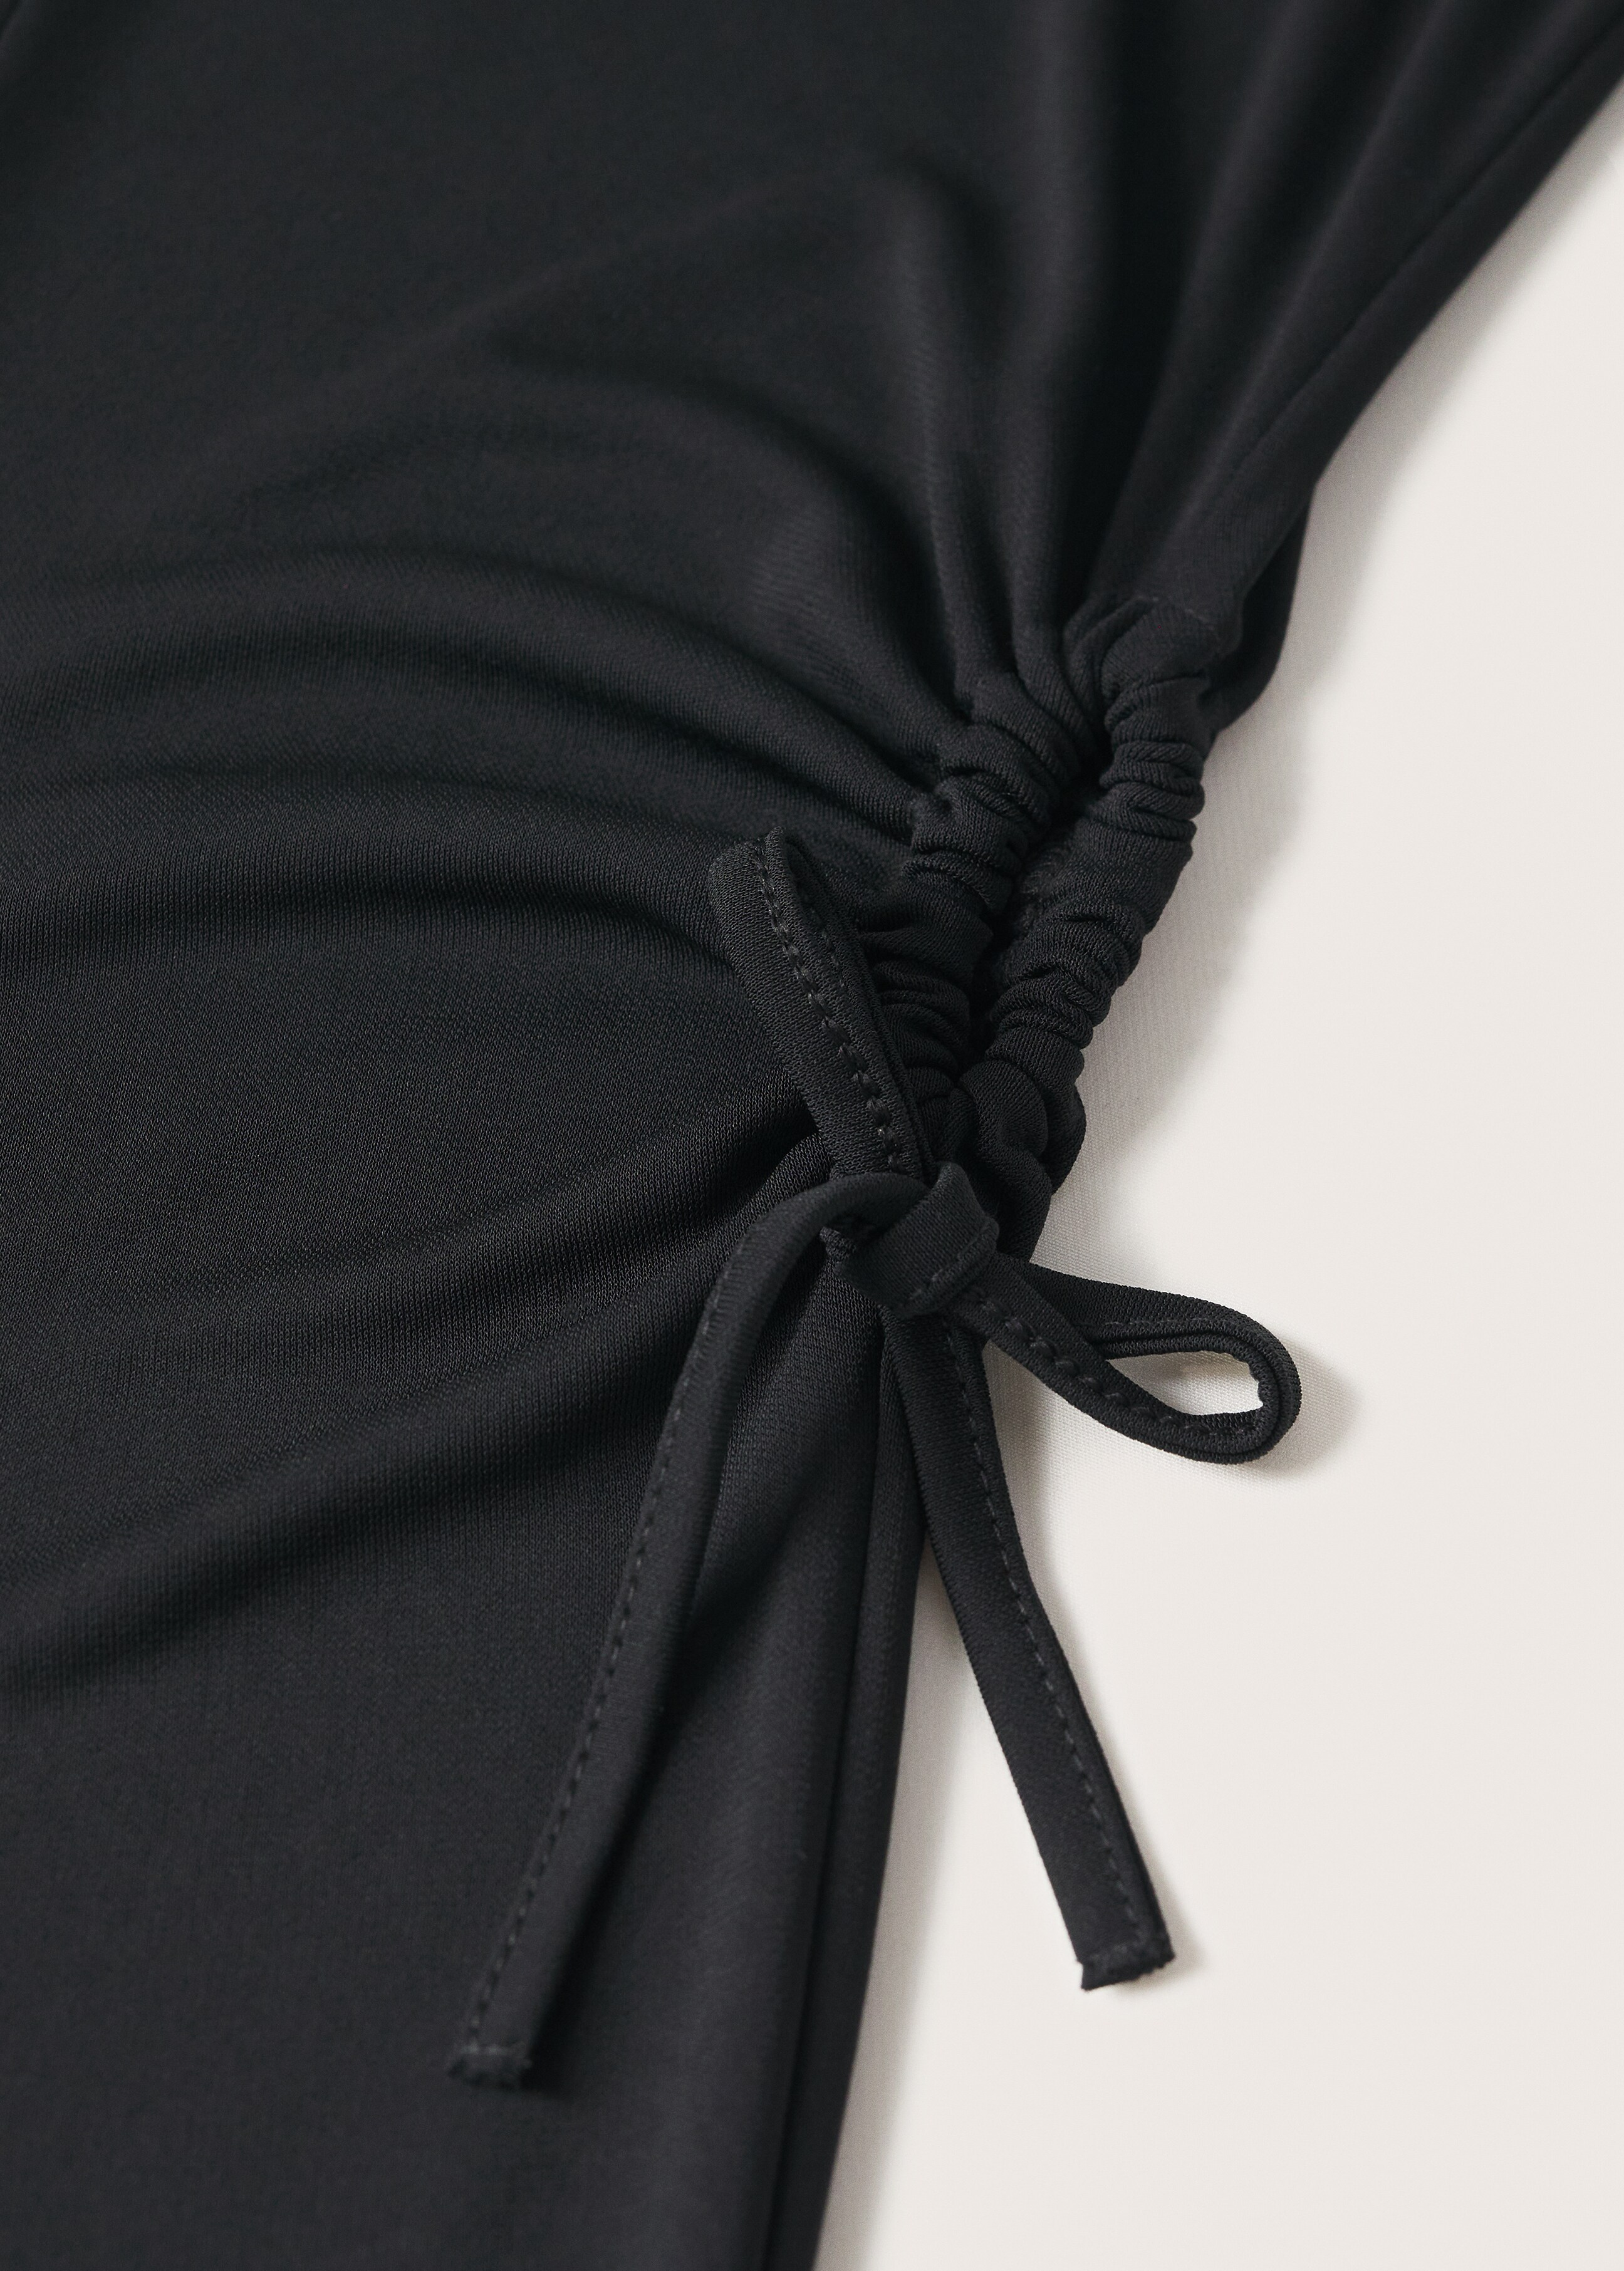 Side slit dress - Details of the article 7